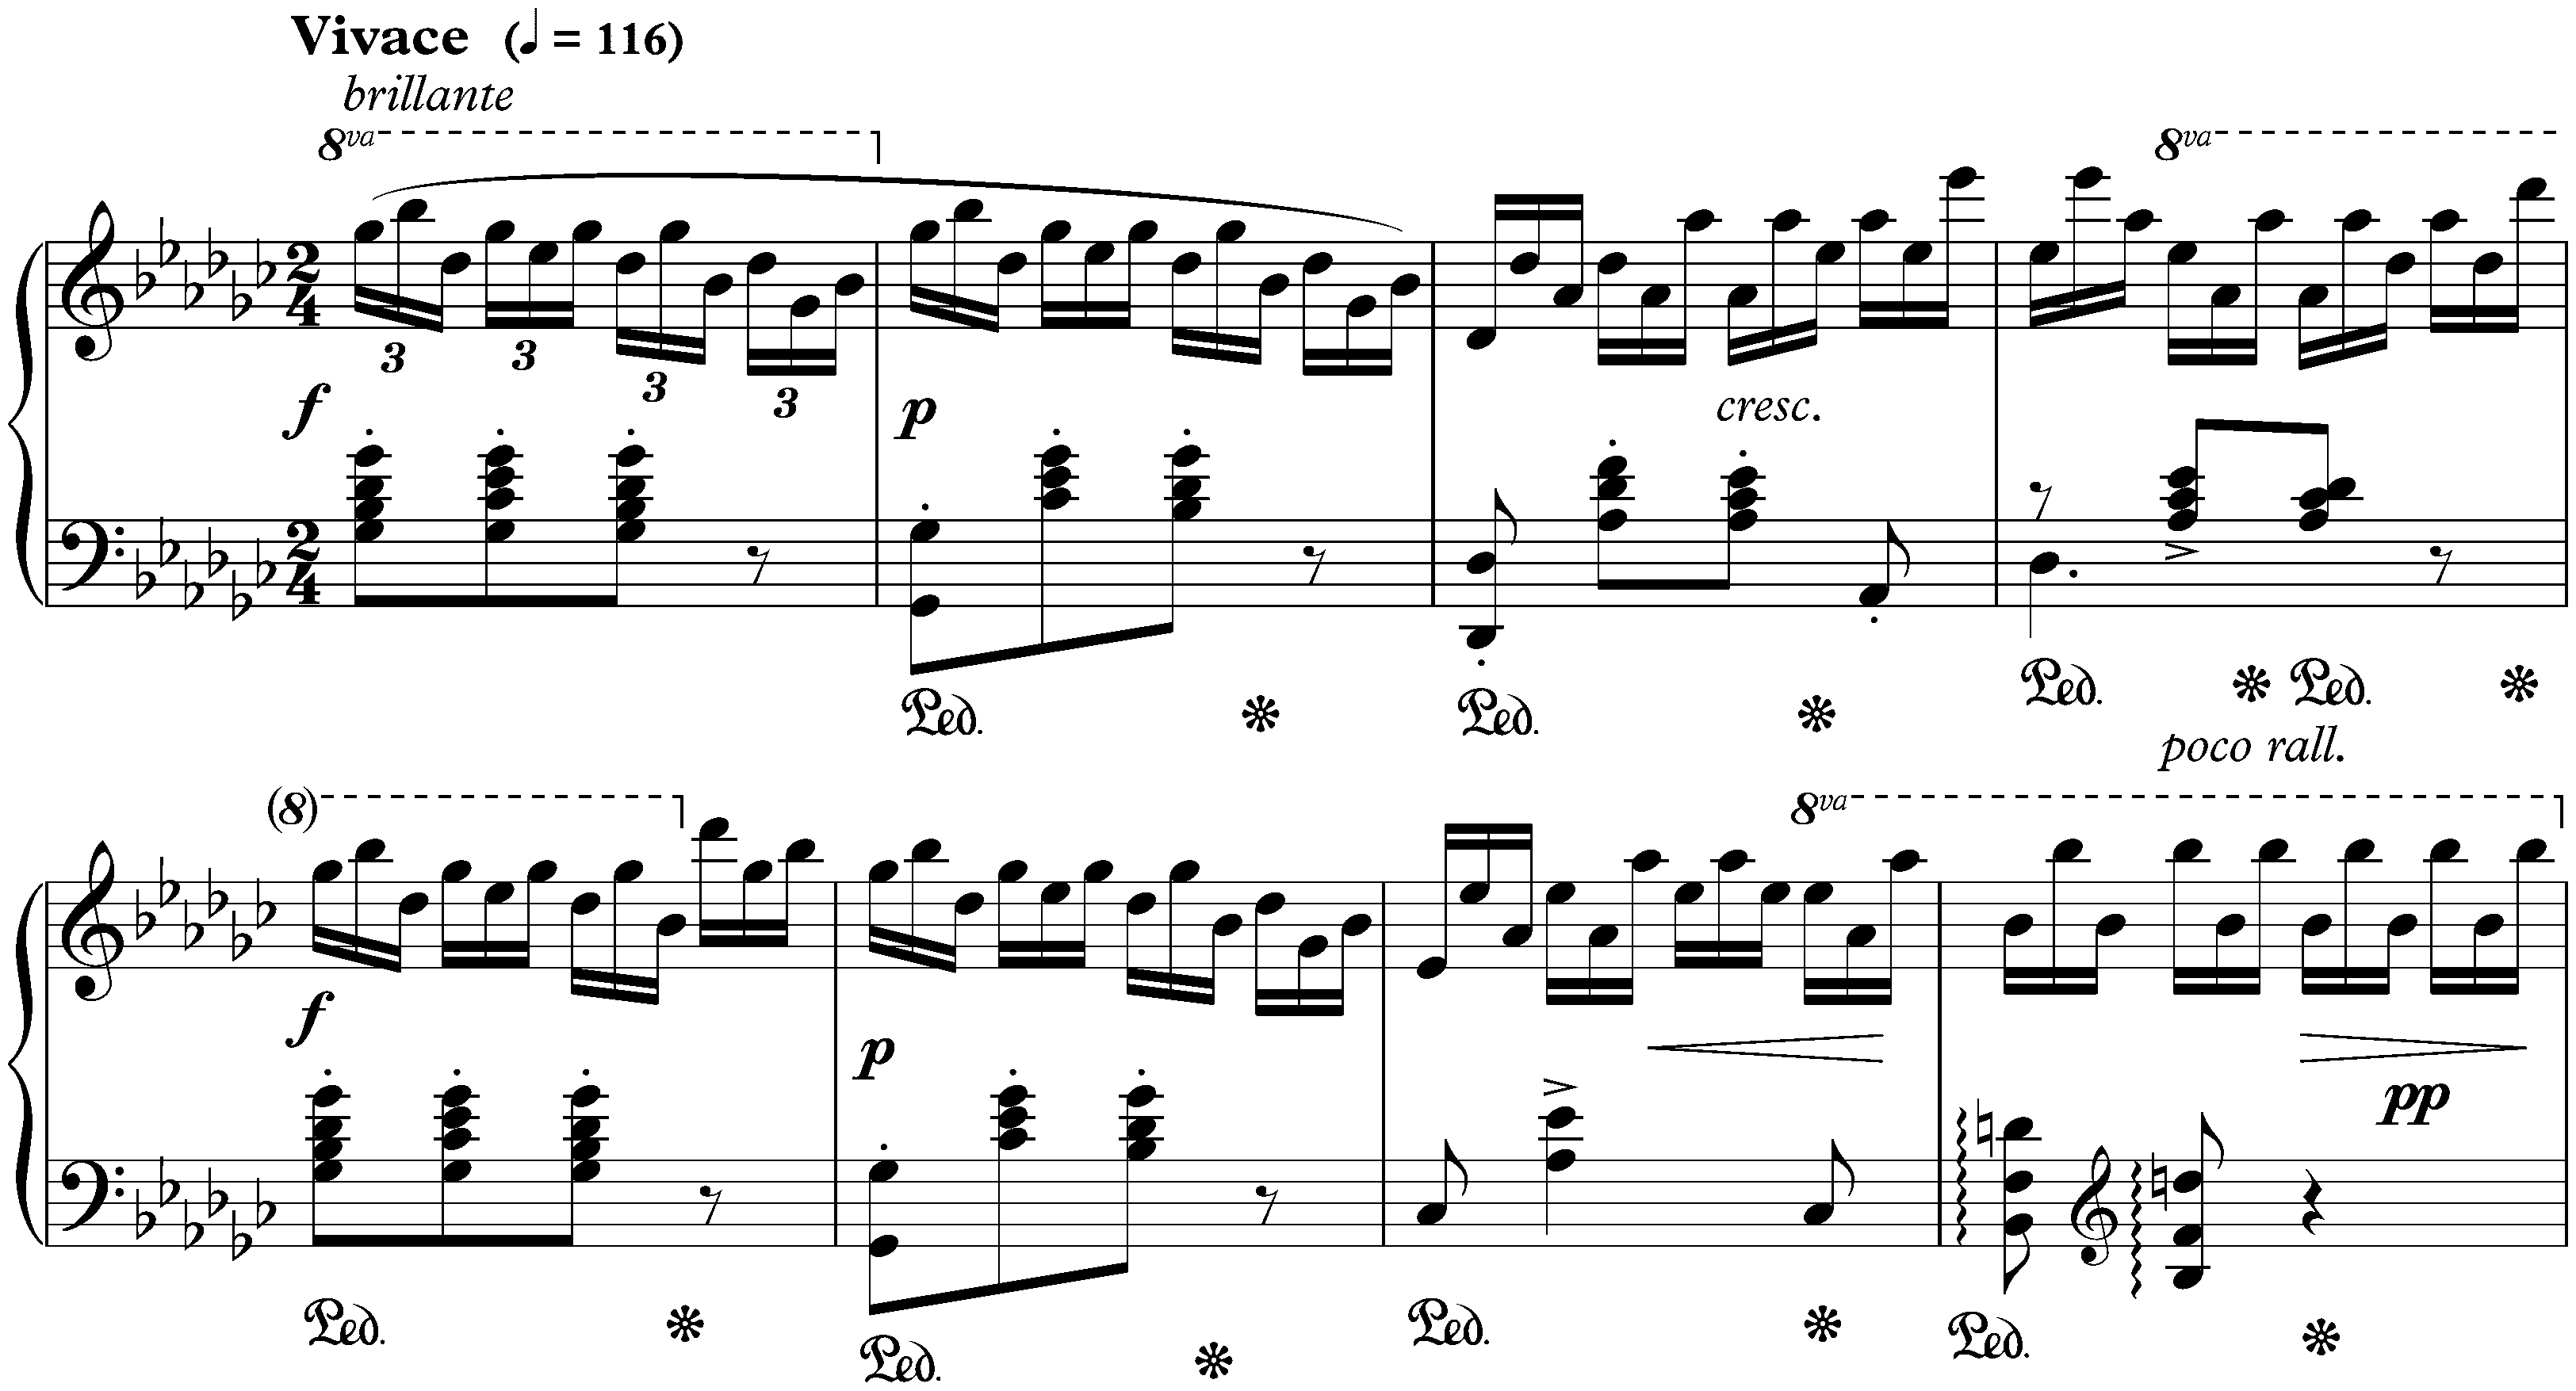 Twelve Études, op. 10; 5. G-flat major